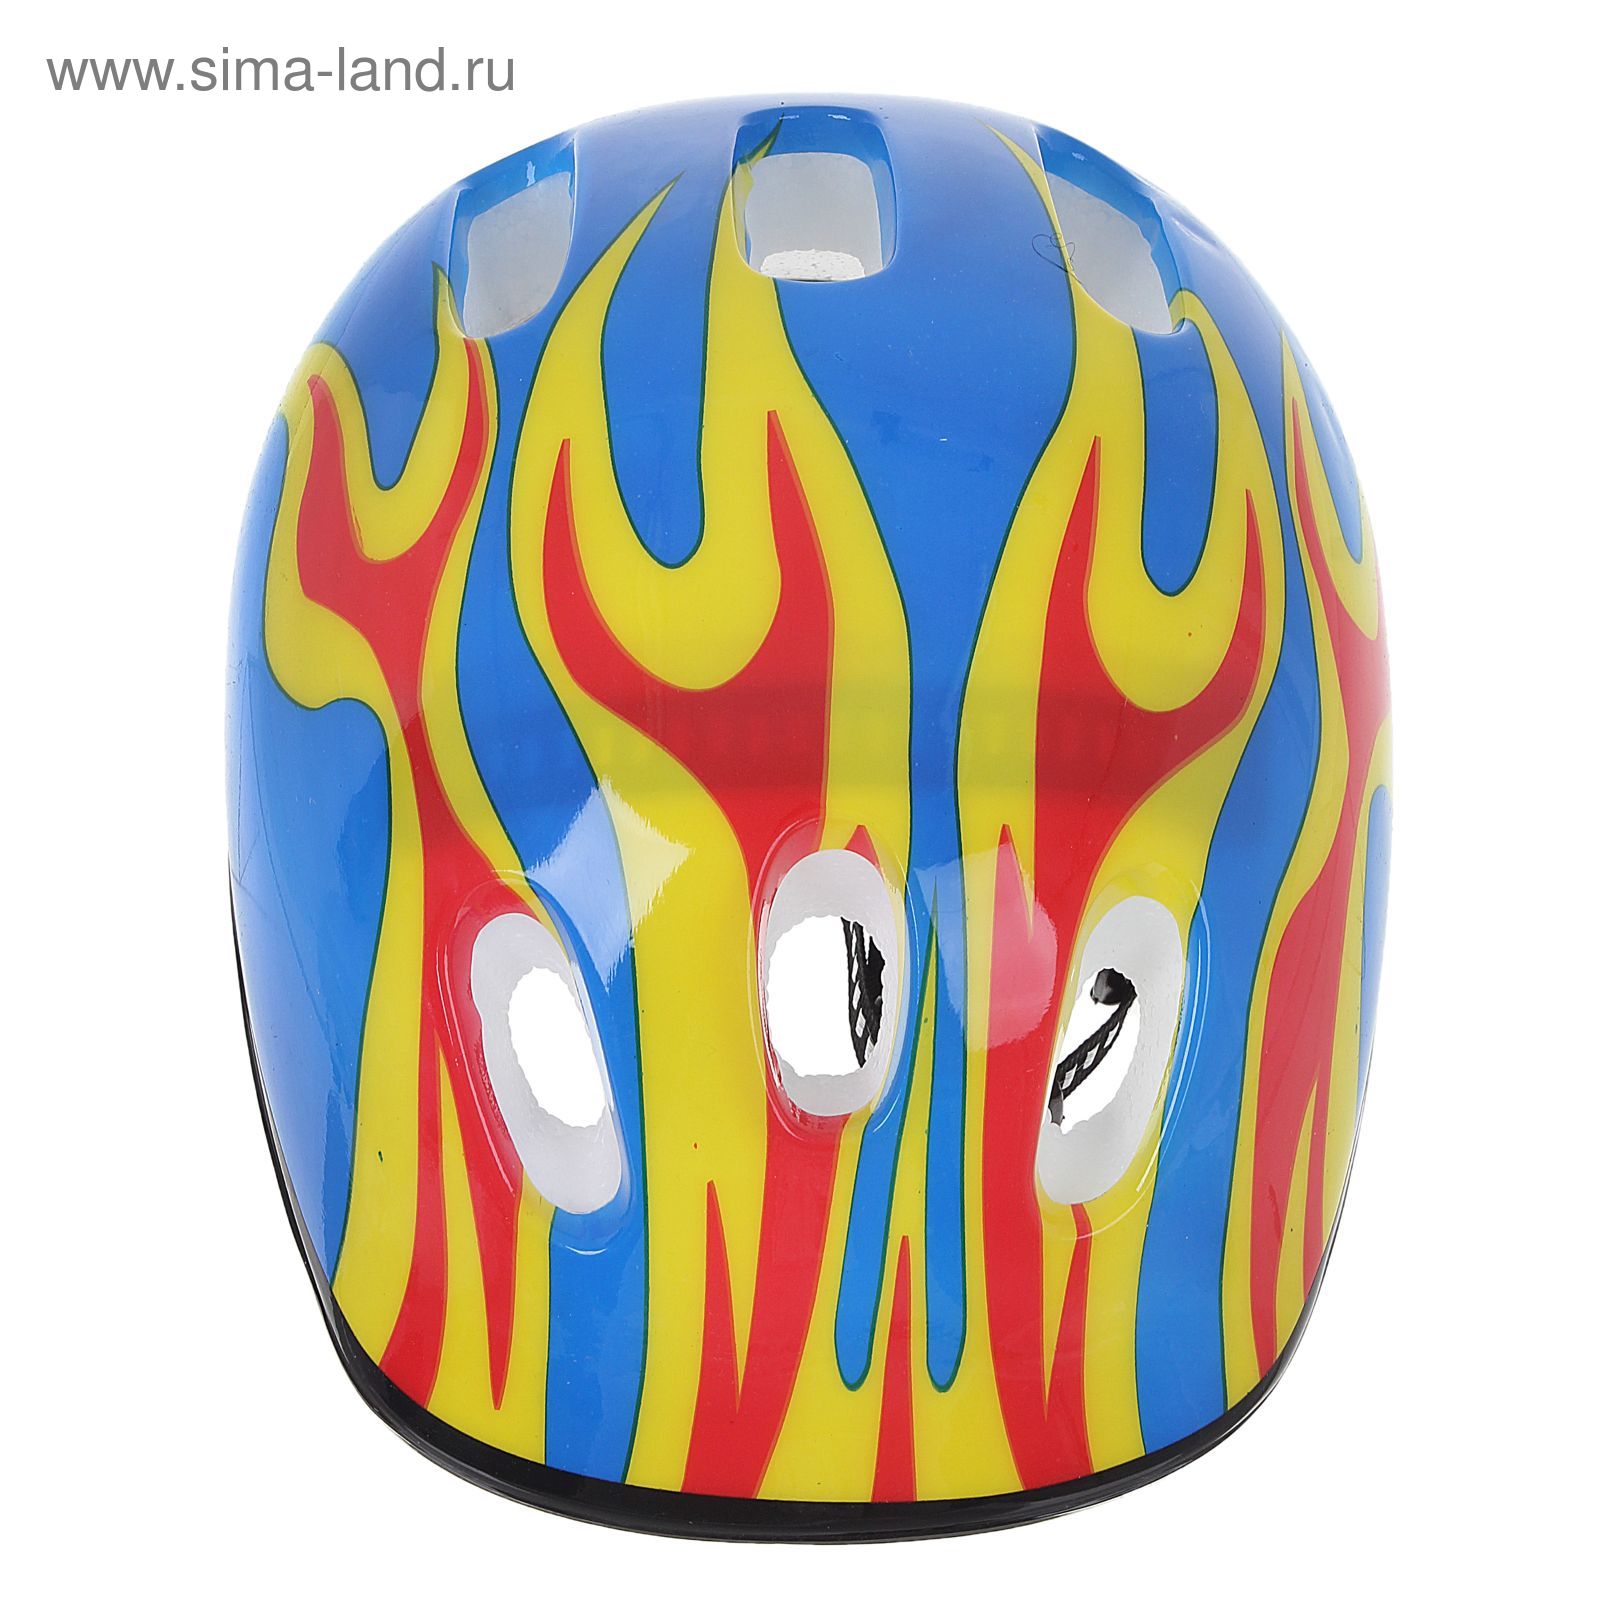 Шлем защитный детский OT-H6, размер M (55-58 см), цвет: синий